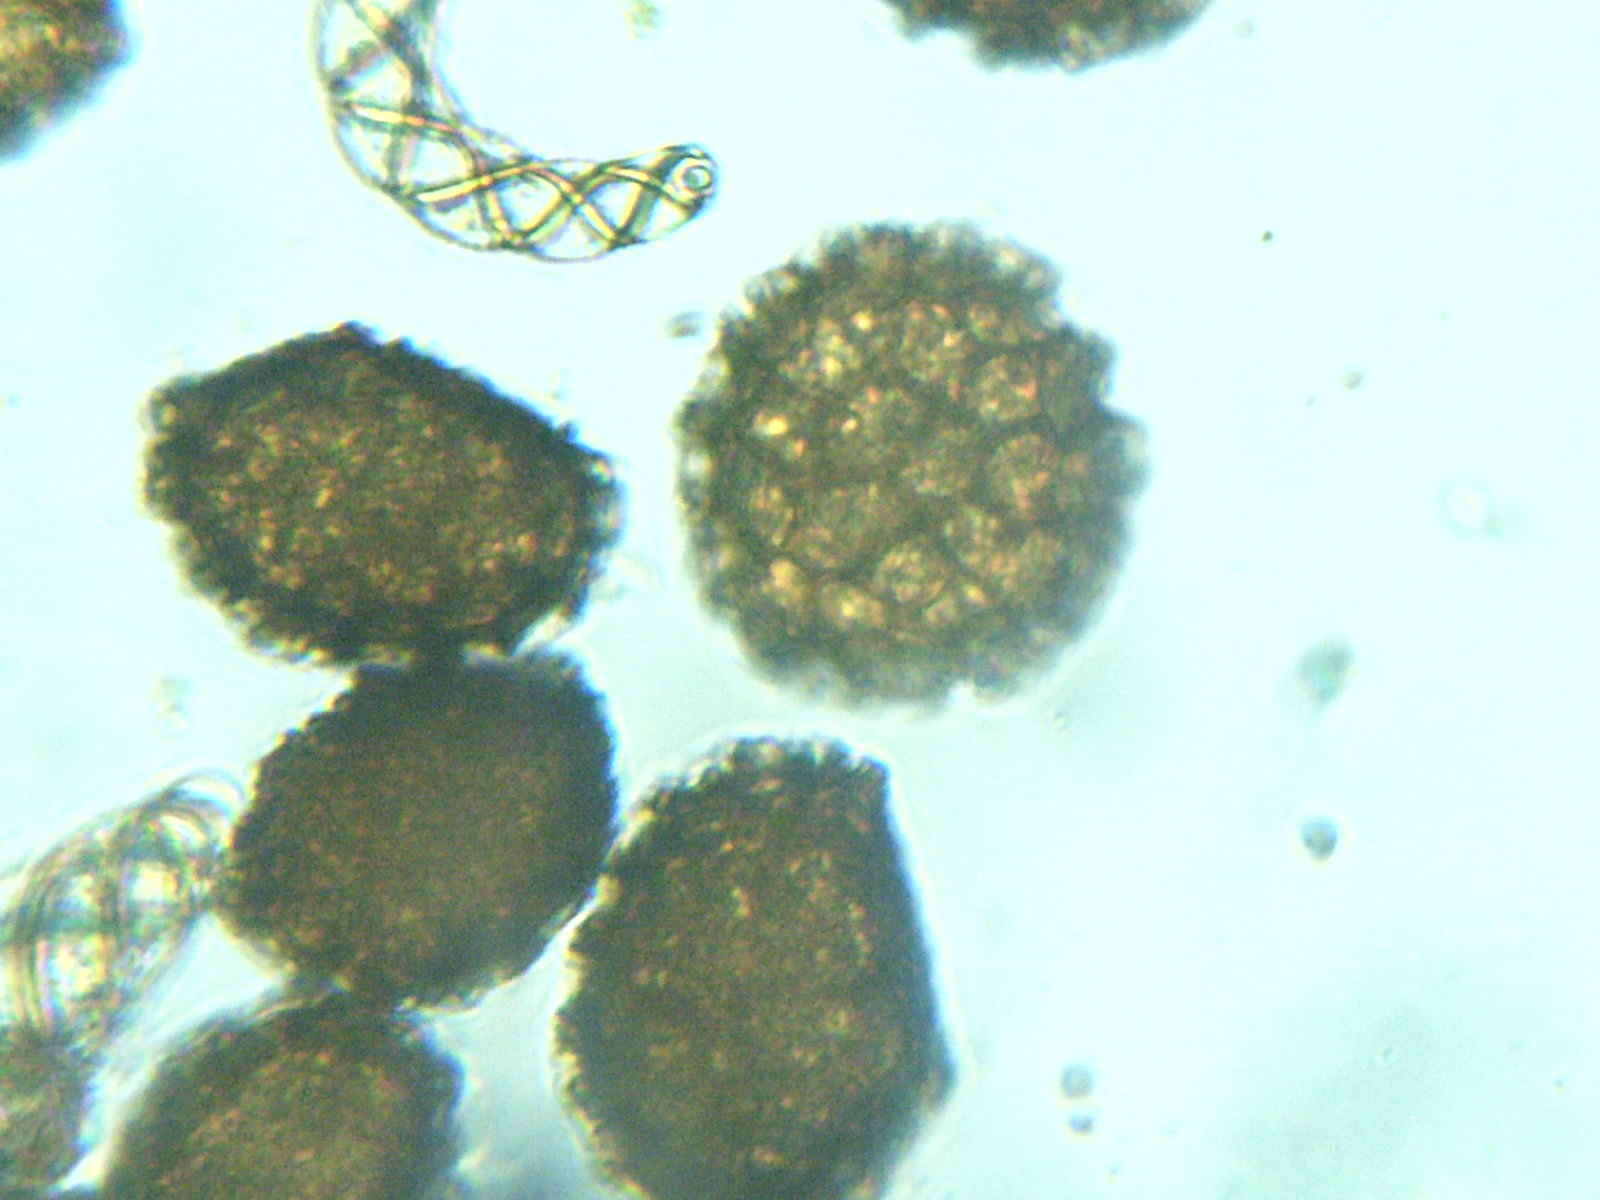 Image of Fossombronia foveolata Lindb.